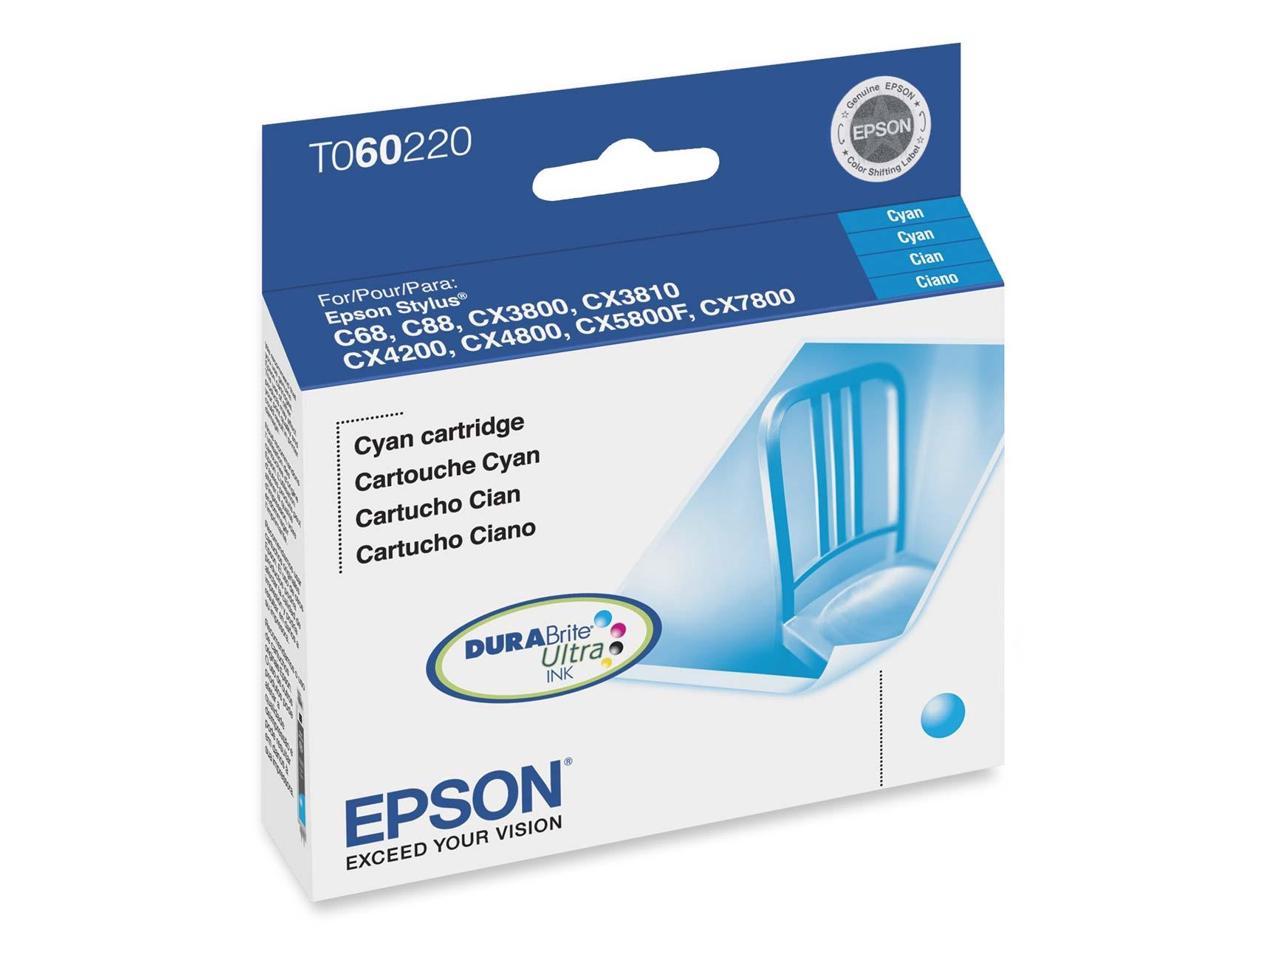 EPSON 60 (T060220) Ink Cartridges Cyan